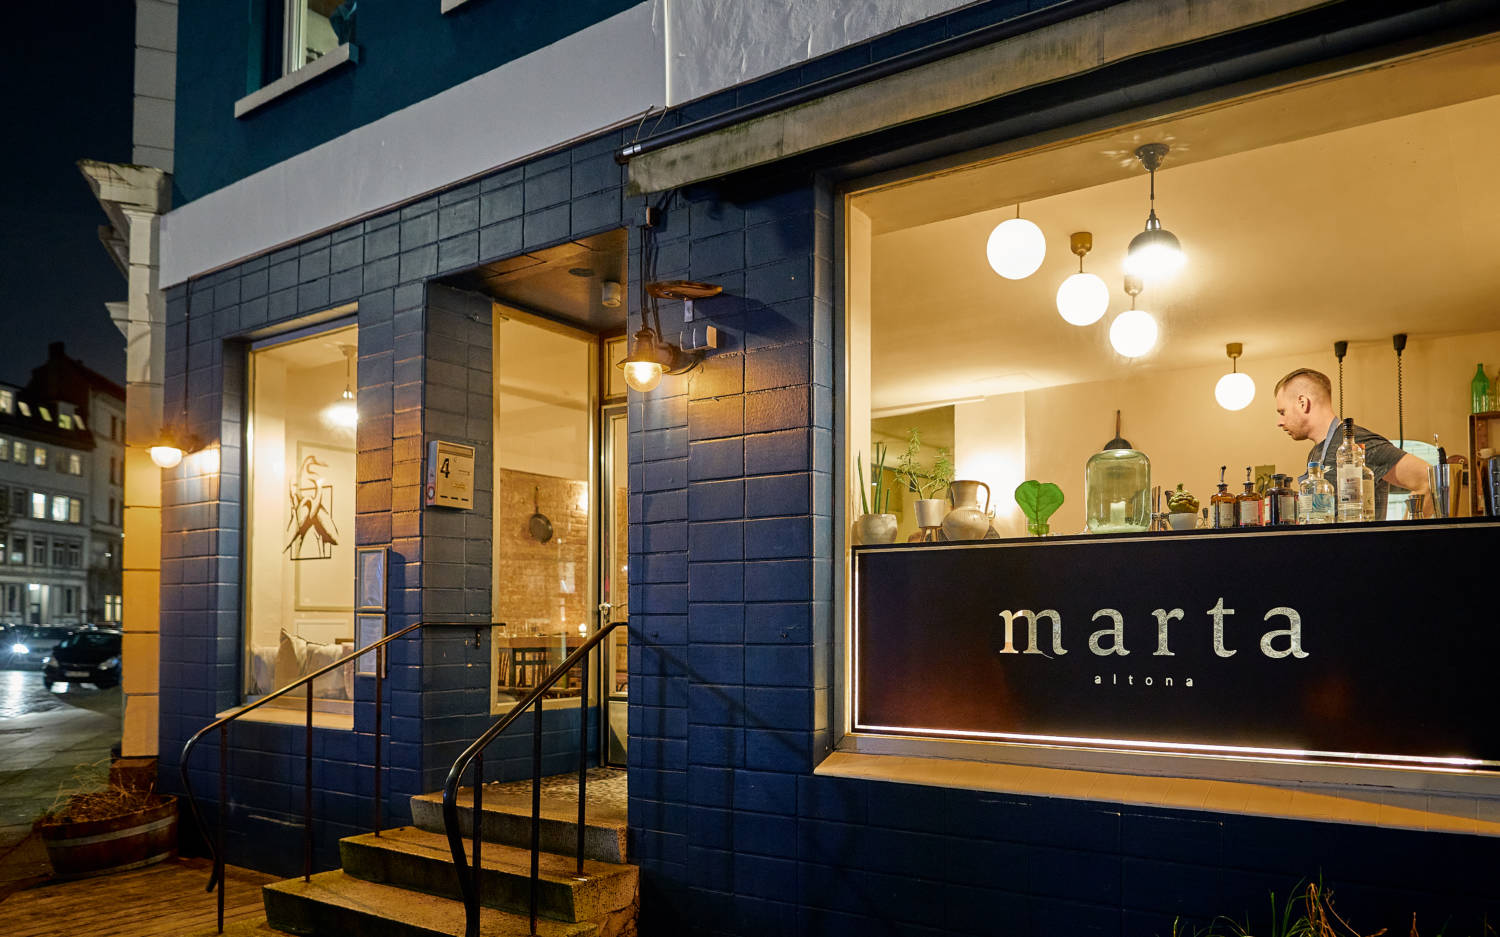 Das Restaurant Marta am Spritzenplatz in Ottensen hat noch bis Jahresende geöffnet  / ©Marc Sill